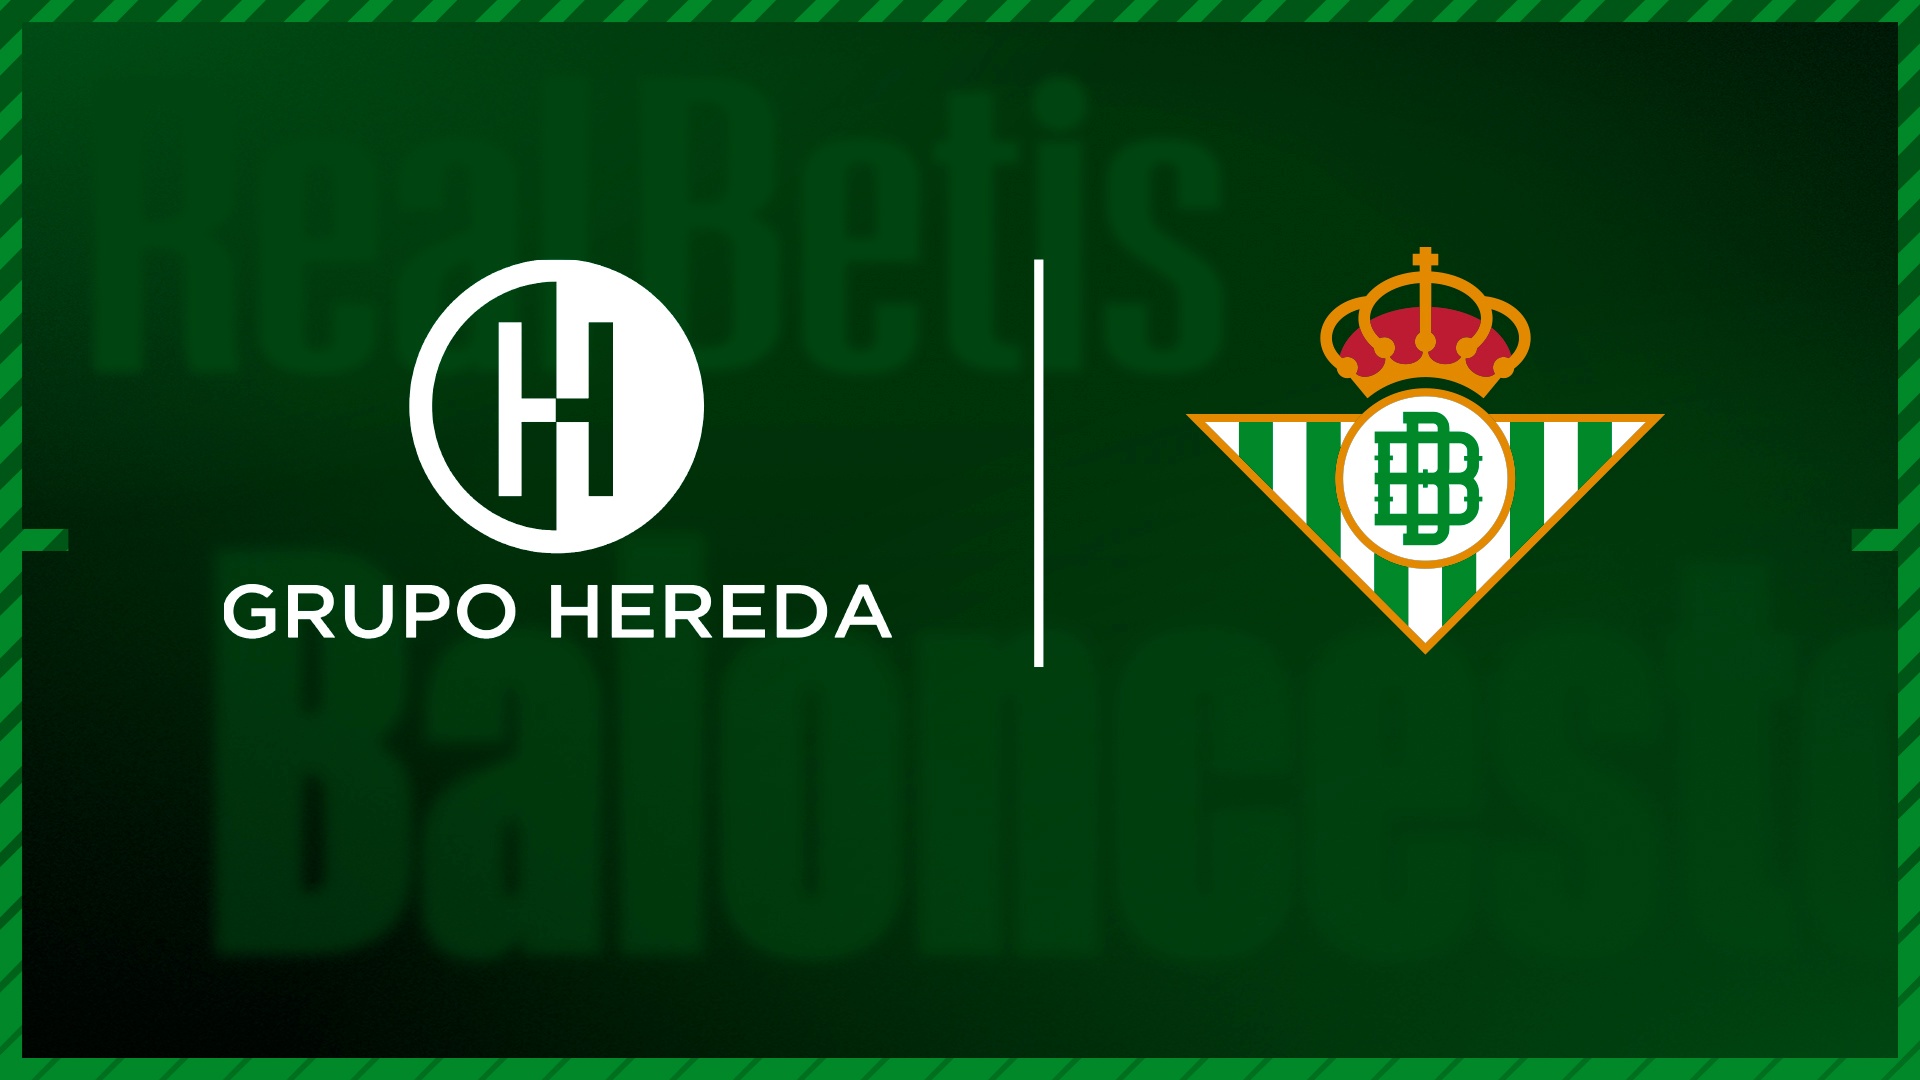 El Grupo Hereda ha ultimado la compra del Real Betis Baloncesto.-